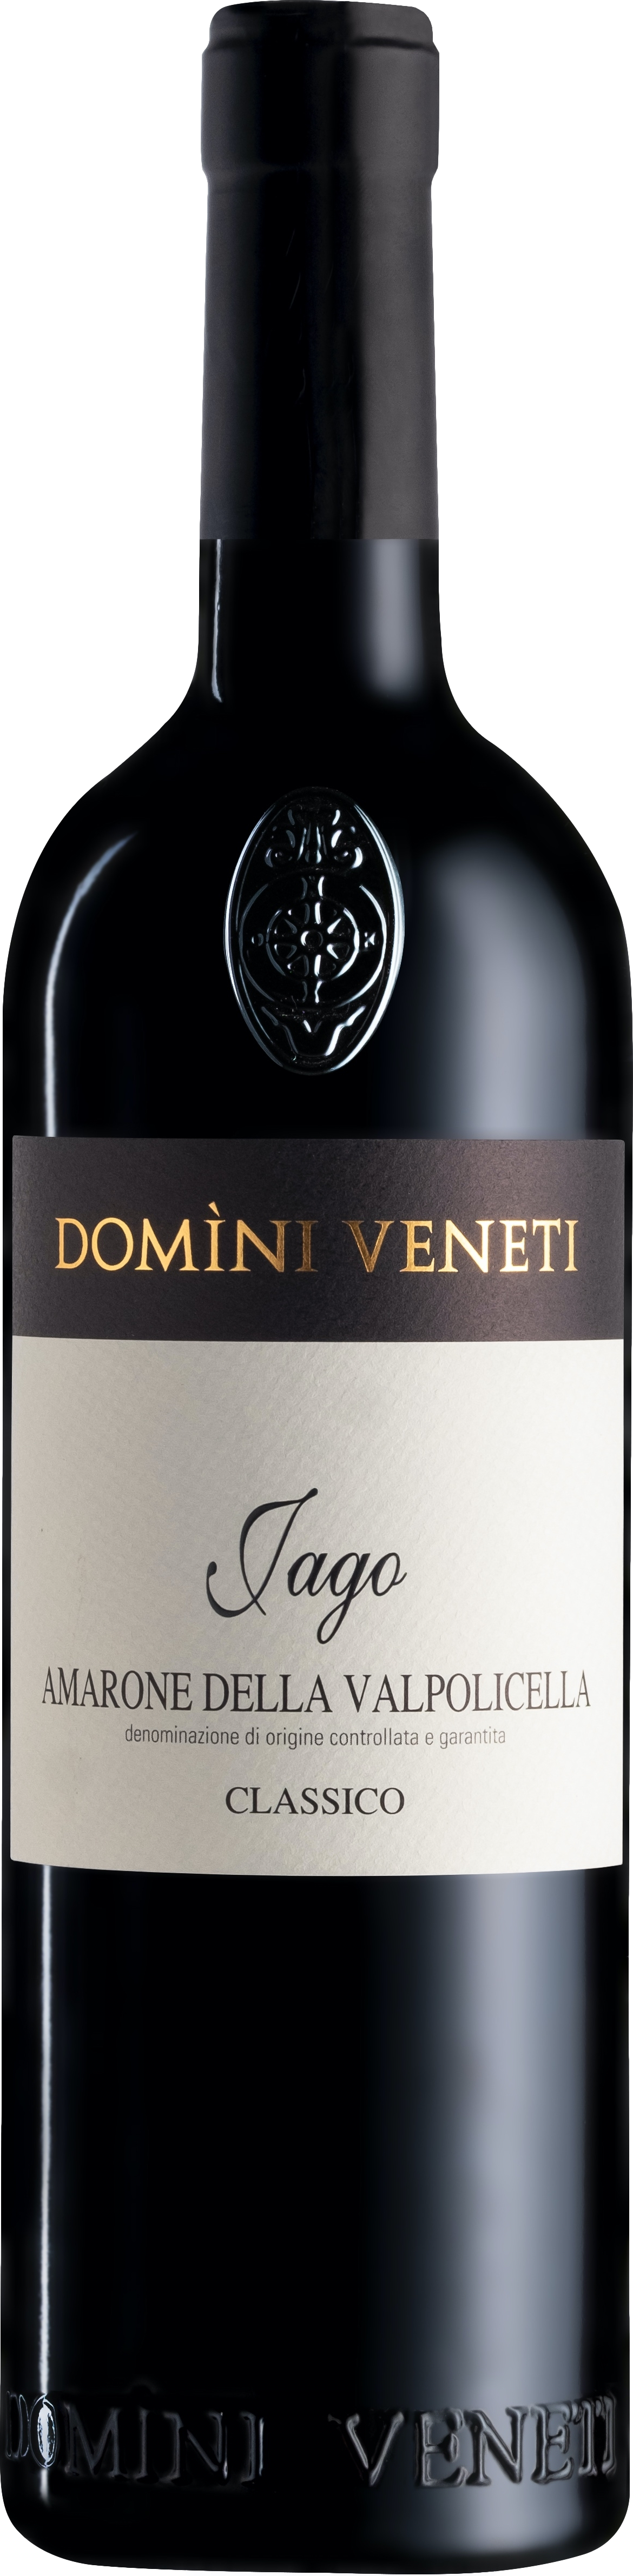 Domini Veneti Vigneti di Jago Amarone della Valpolicella Classico 2017 Červené 16.5% 0.75 l